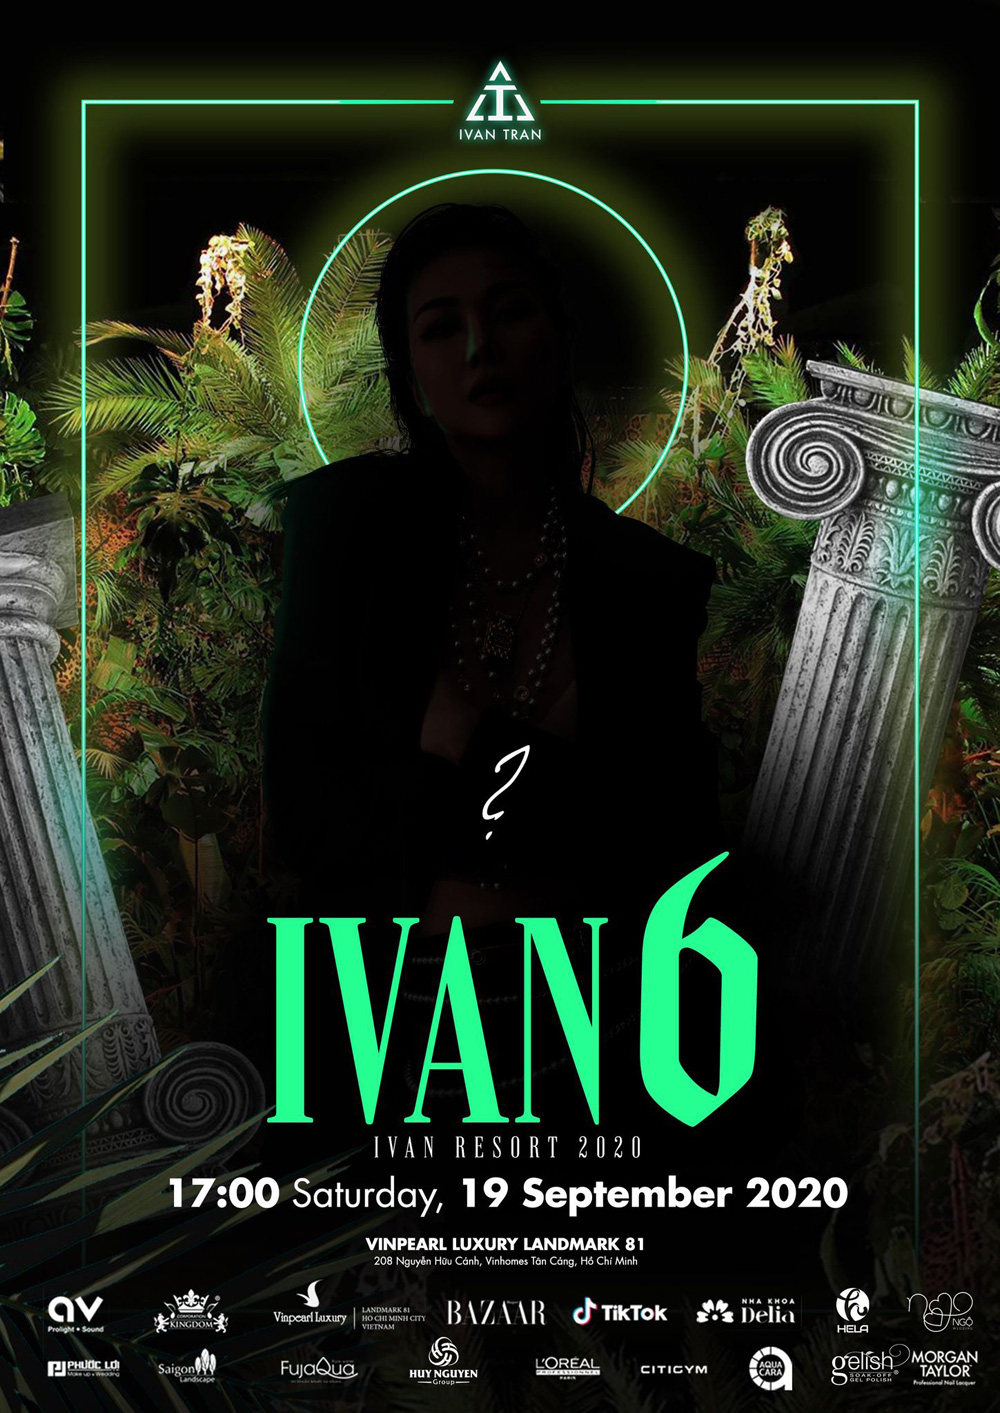 Hé lộ thông tin độc quyền về show IVAN6 của Ivan Trần